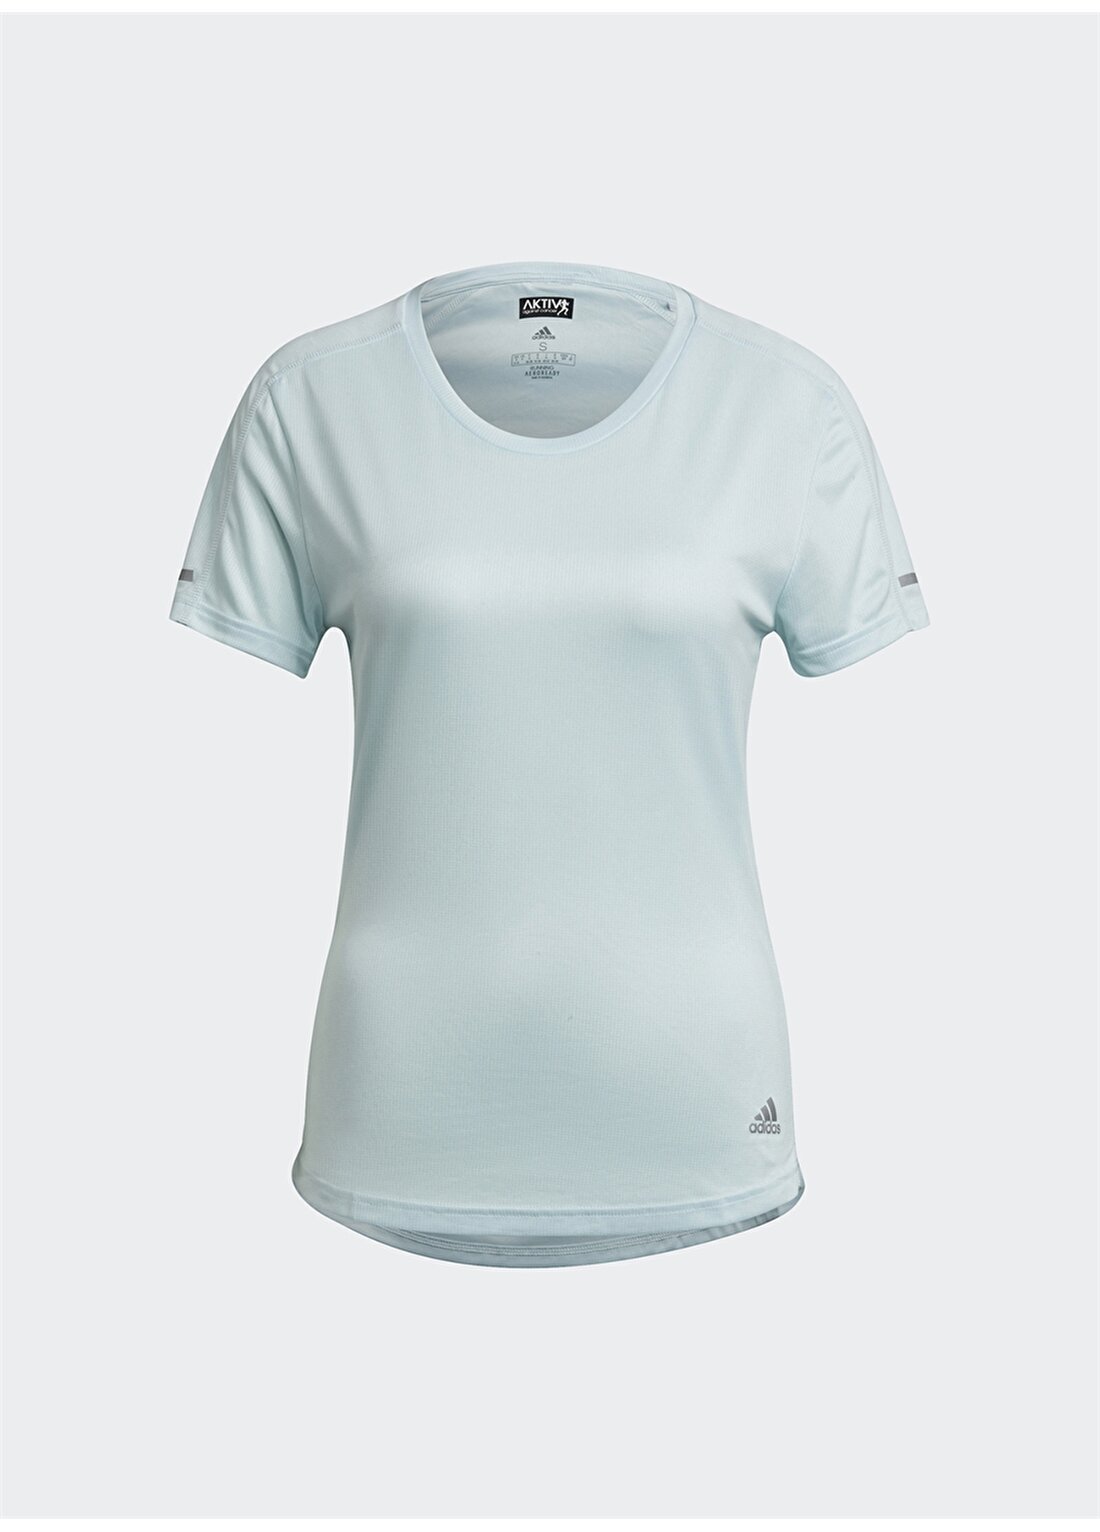 Adidas H31028 Run It Tee W Turkuaz Kadın T-Shirt